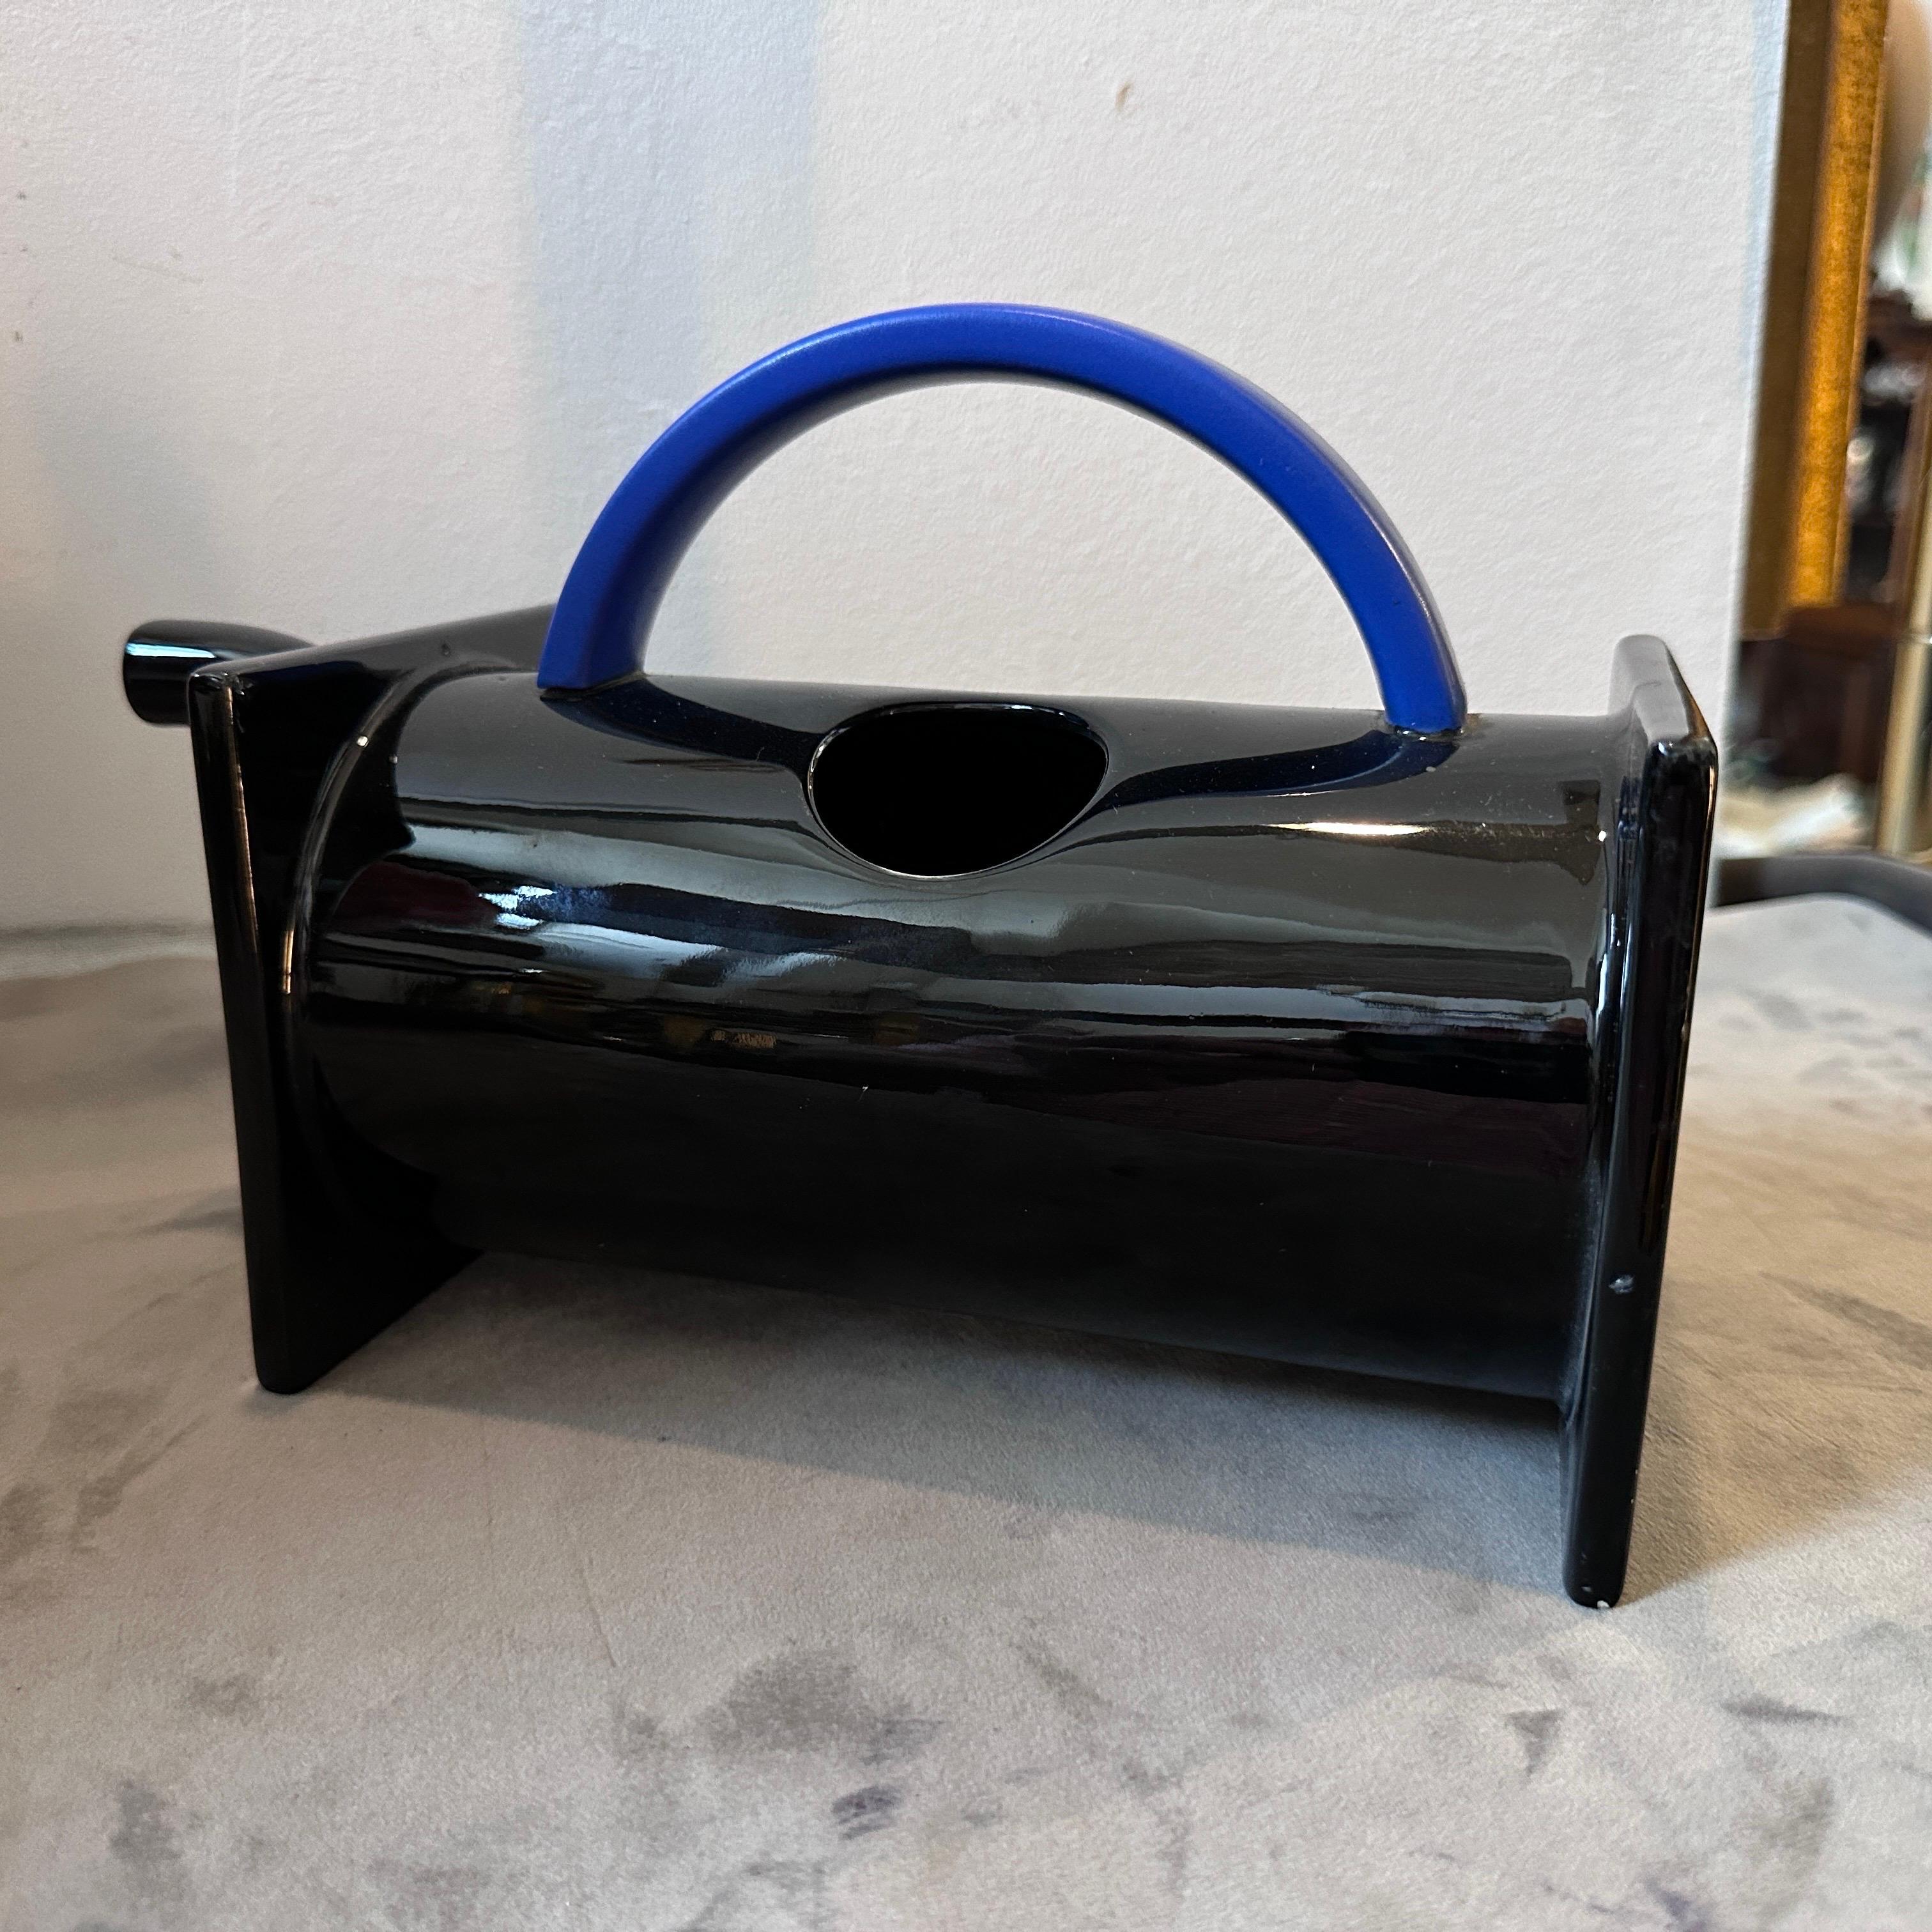 Eine Memphis Milano Teekanne aus schwarzer und blauer Keramik, entworfen von Marco Zanini für Bitossi, in perfektem Zustand. Die Teekanne von Marco Zanini ist ein atemberaubendes Stück funktionaler Kunst. Sie verkörpert den ikonischen Stil der